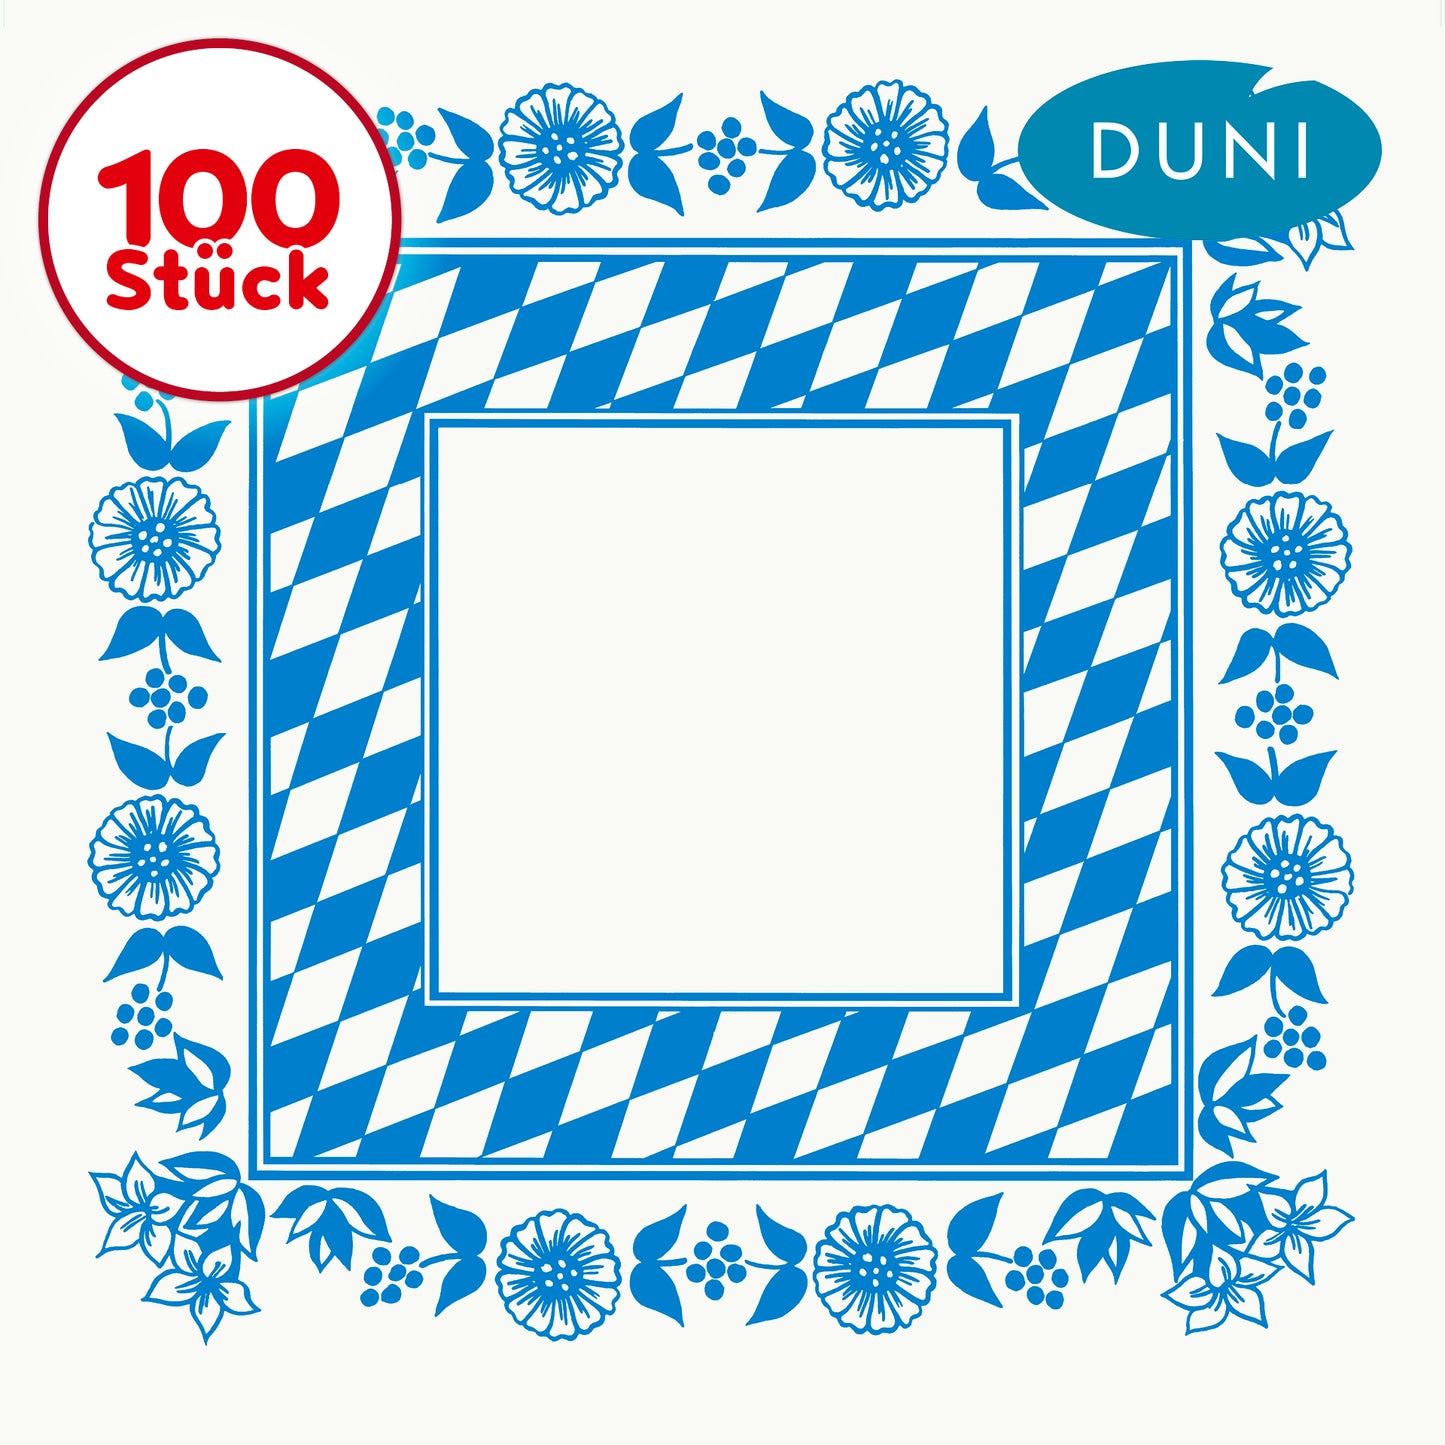 DUNI Dunicel Mitteldecke bayrische Raute 84 x 84 cm